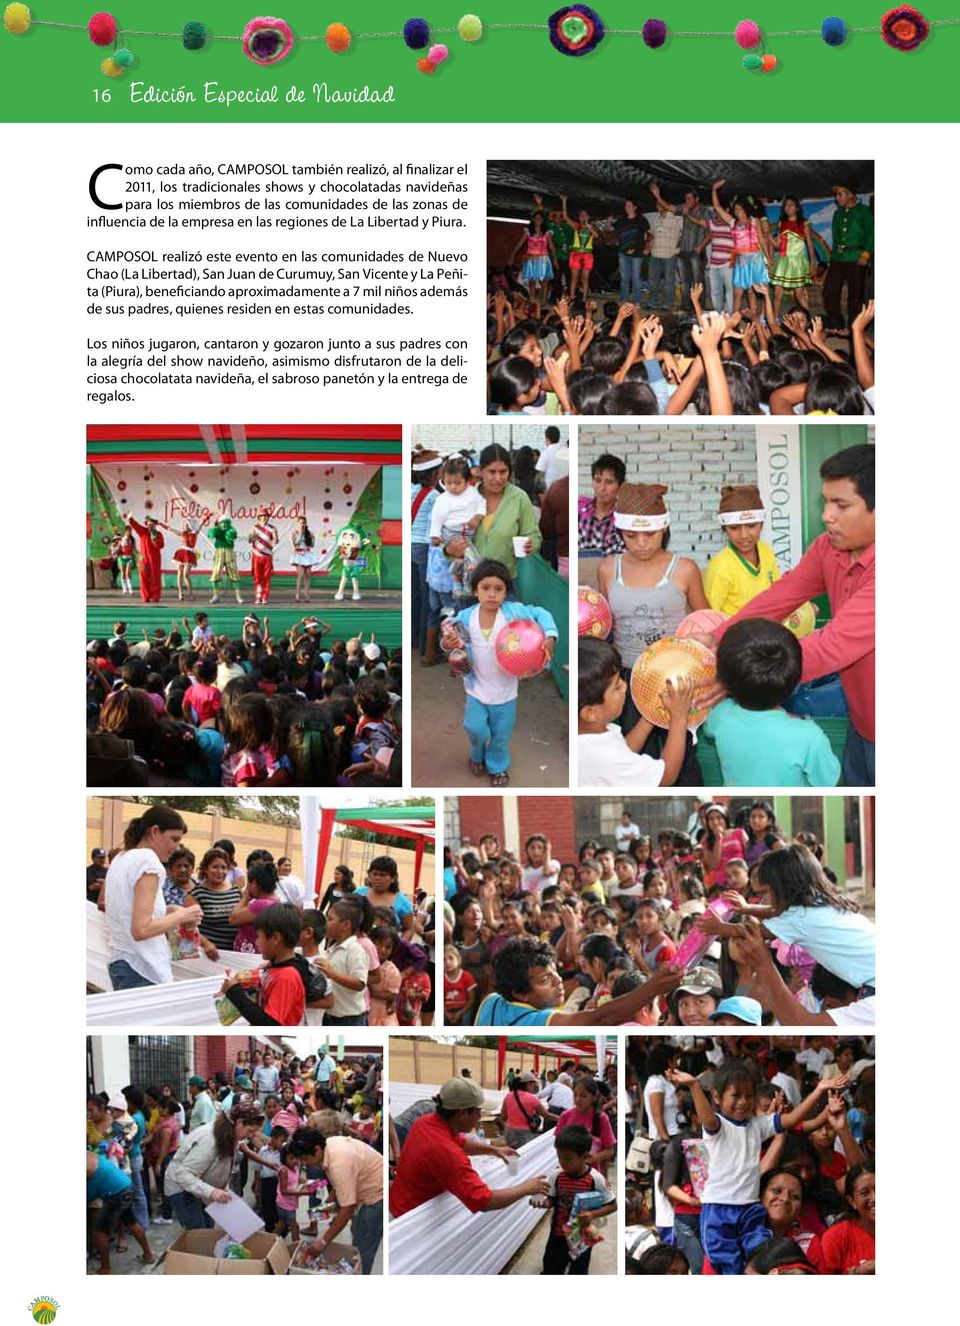 CAMPOSOL realizó este evento en las comunidades de Nuevo Chao (La Libertad), San Juan de Curumuy, San Vicente y La Peñita (Piura), beneficiando aproximadamente a 7 mil